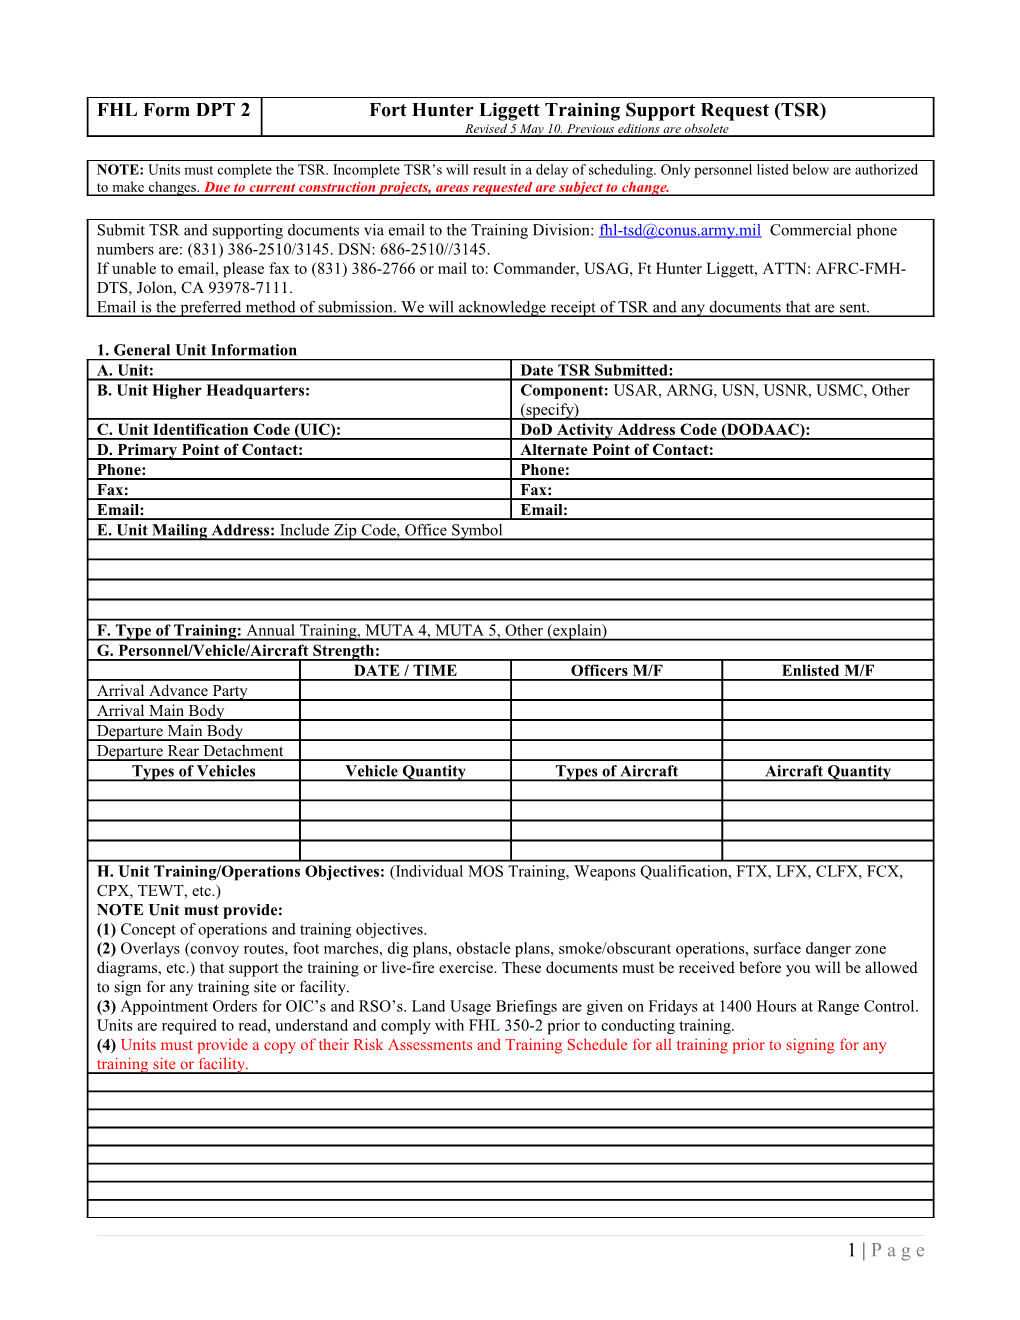 Fort Hunter Liggett Training Support Request (Tsr) Form